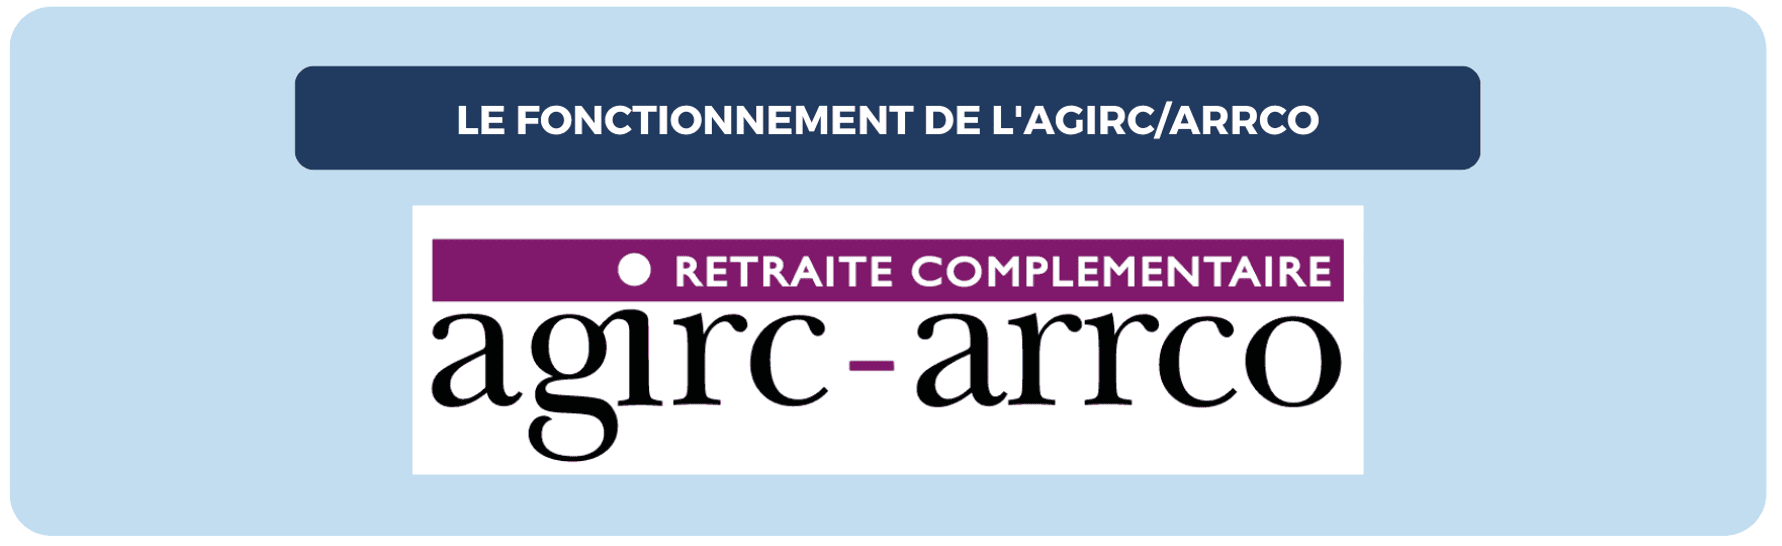 Le fonctionnement de la retraite complémentaire AGIRC-ARRCO